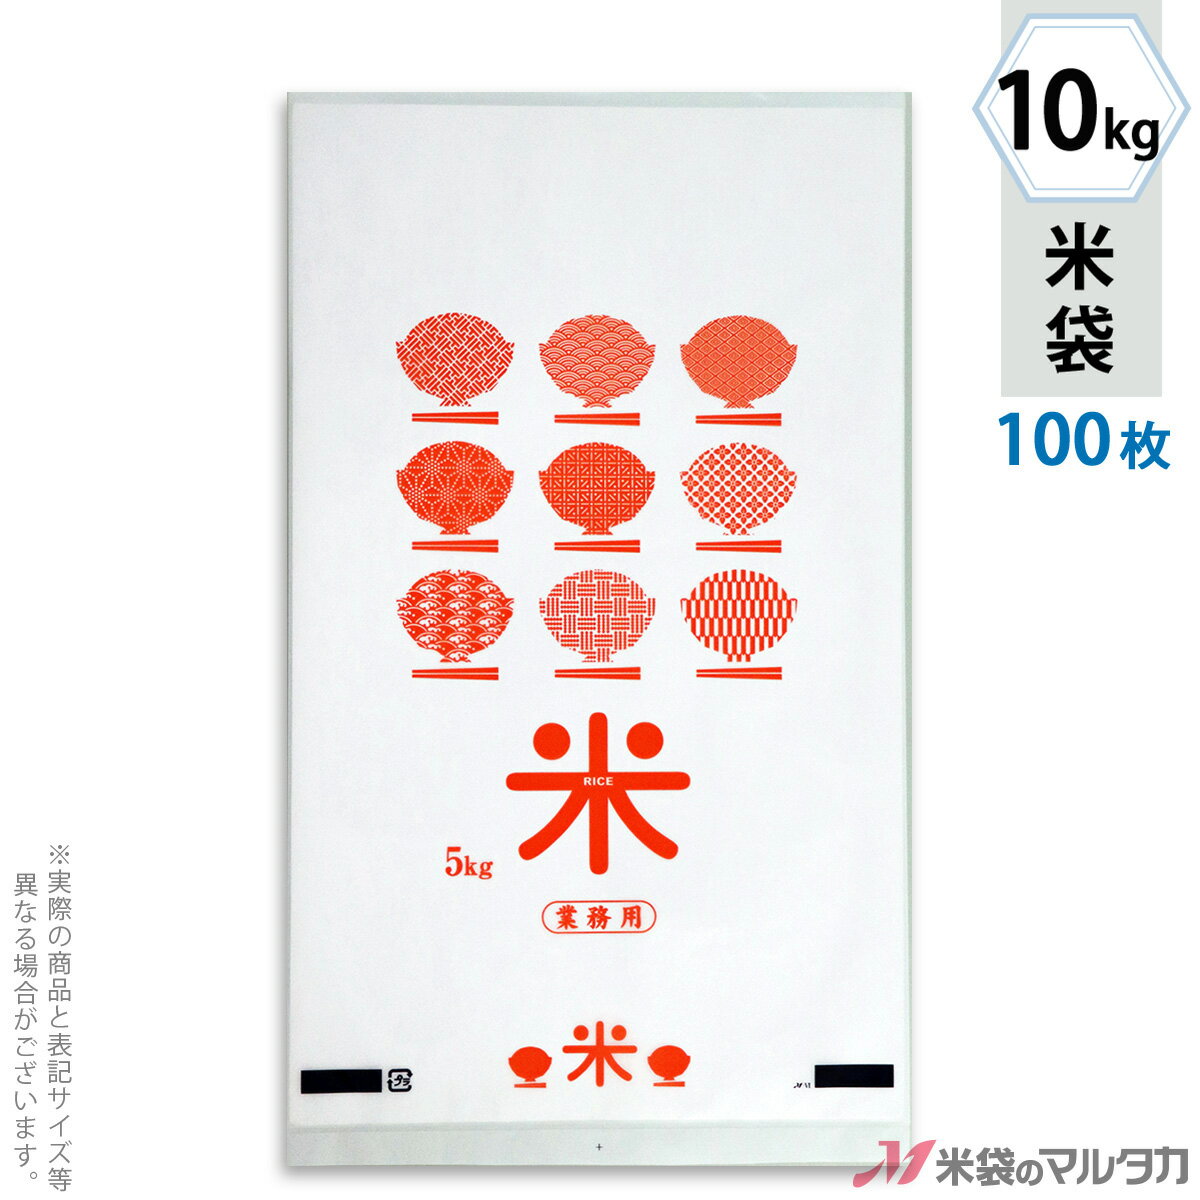 米袋 ポリ乳白 マイクロドット 業務用 オレンジ 10kg 100枚セット PD-1370